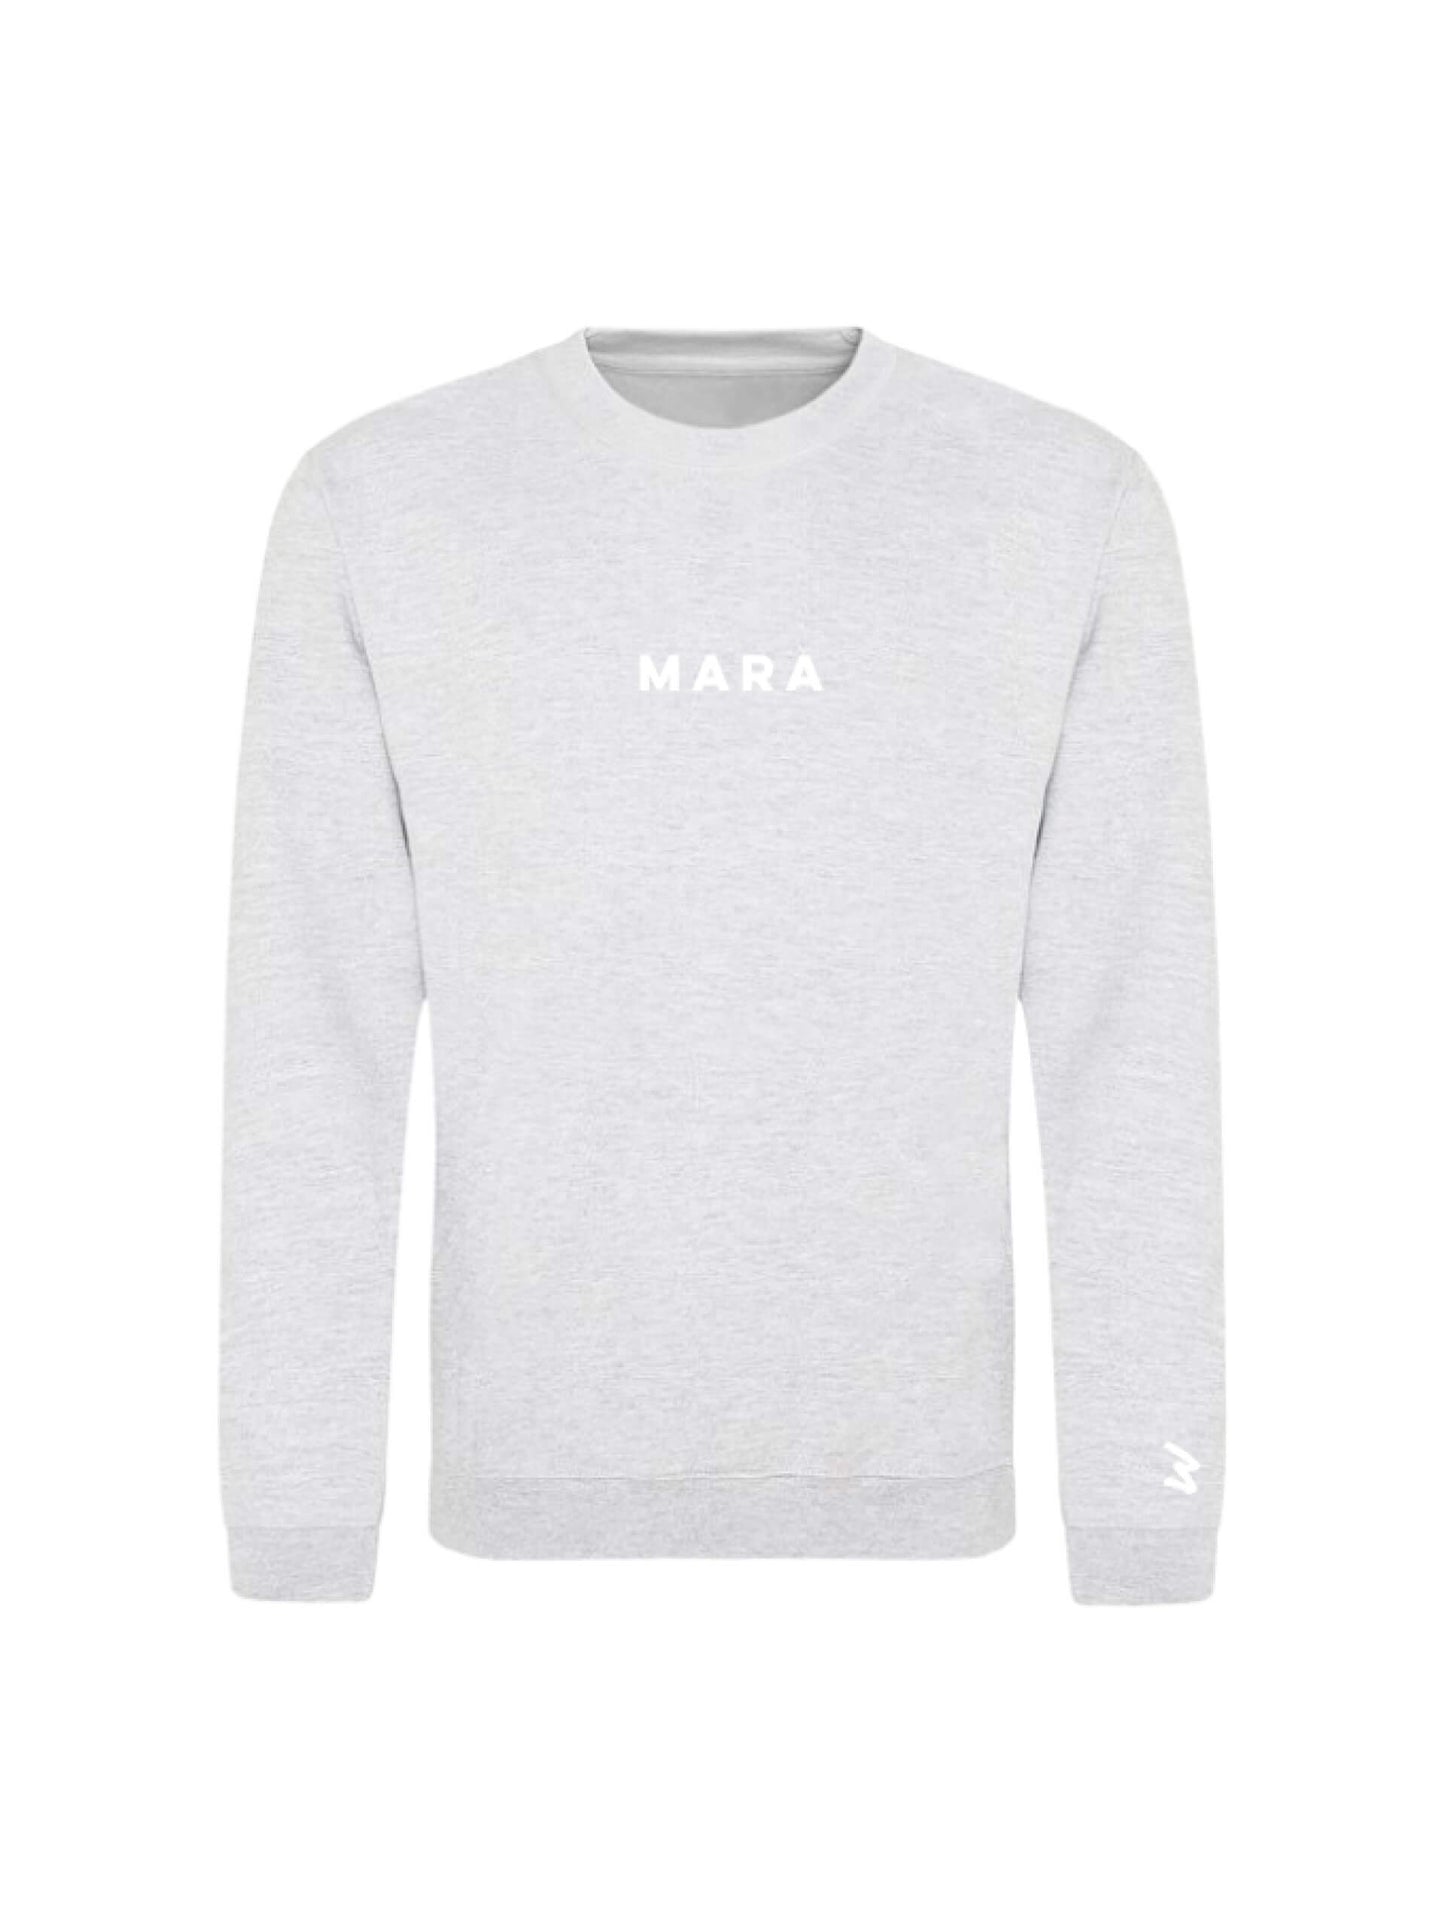 MARA Long-sleeve Sweatshirt